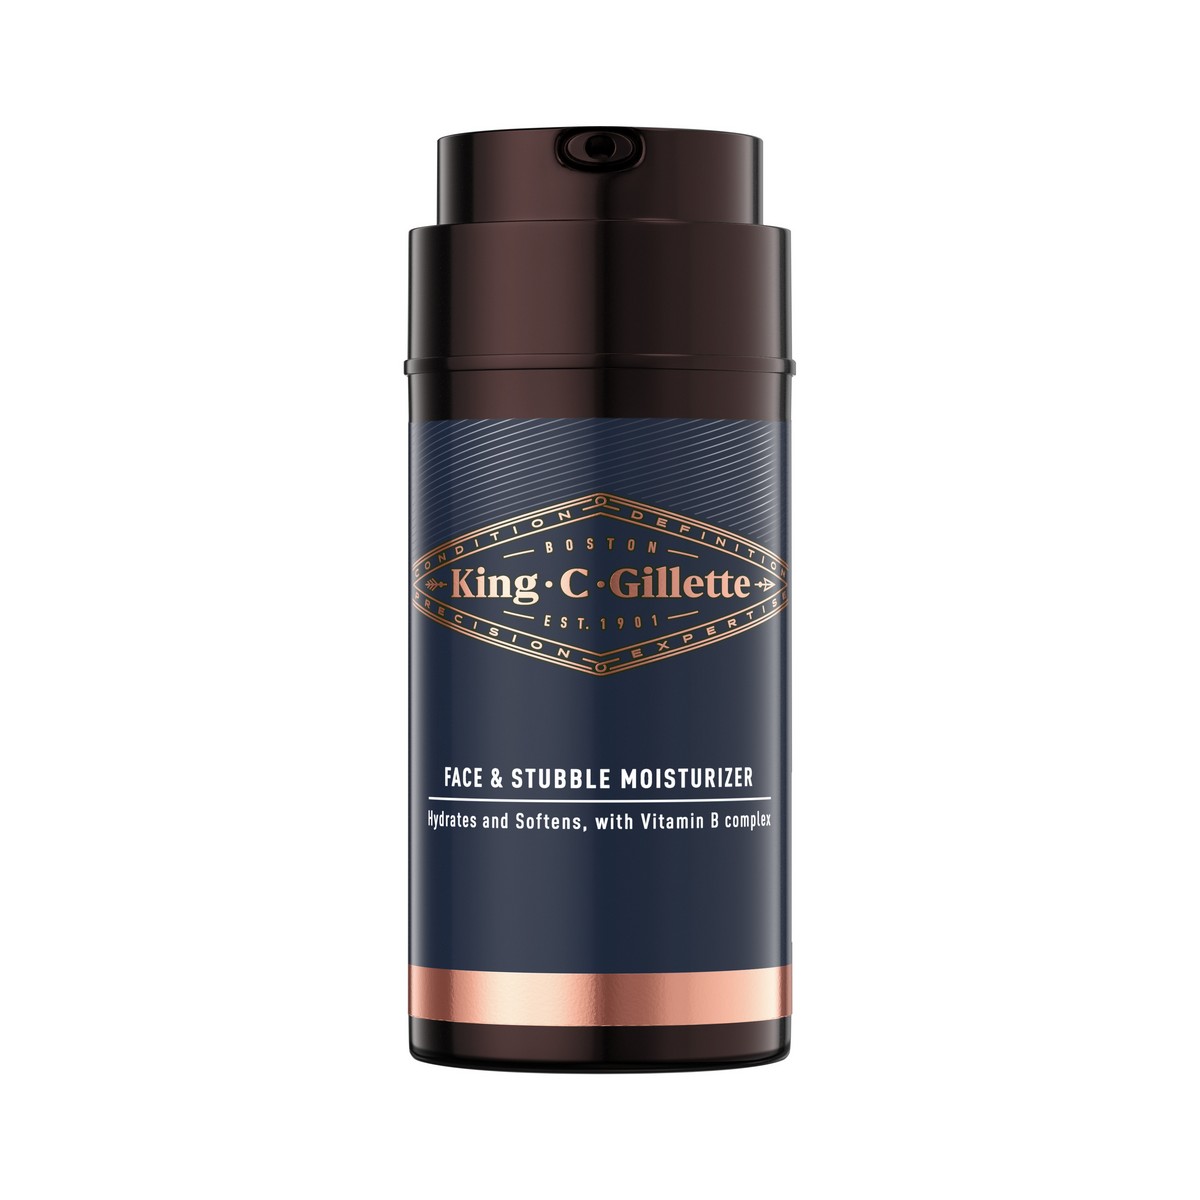 King C. Gillette Face & Stubble Moisturizer krém na vousy a tvář 100 ml